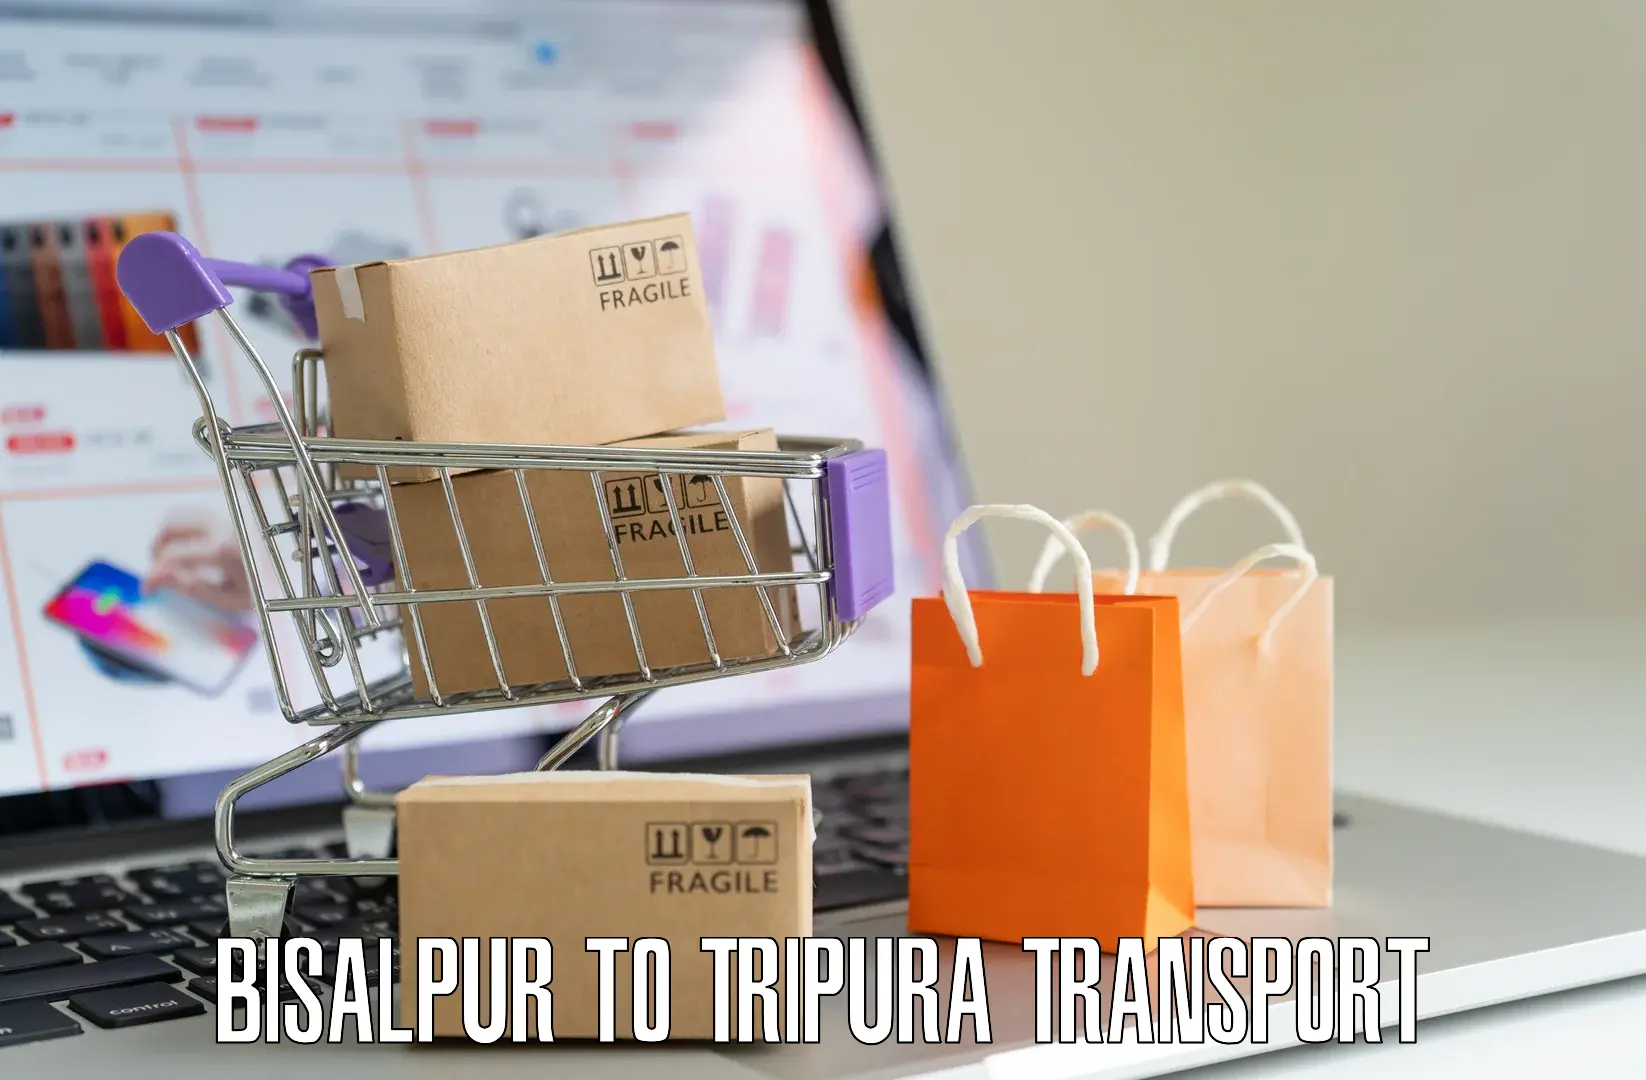 Transport services in Bisalpur to IIIT Agartala